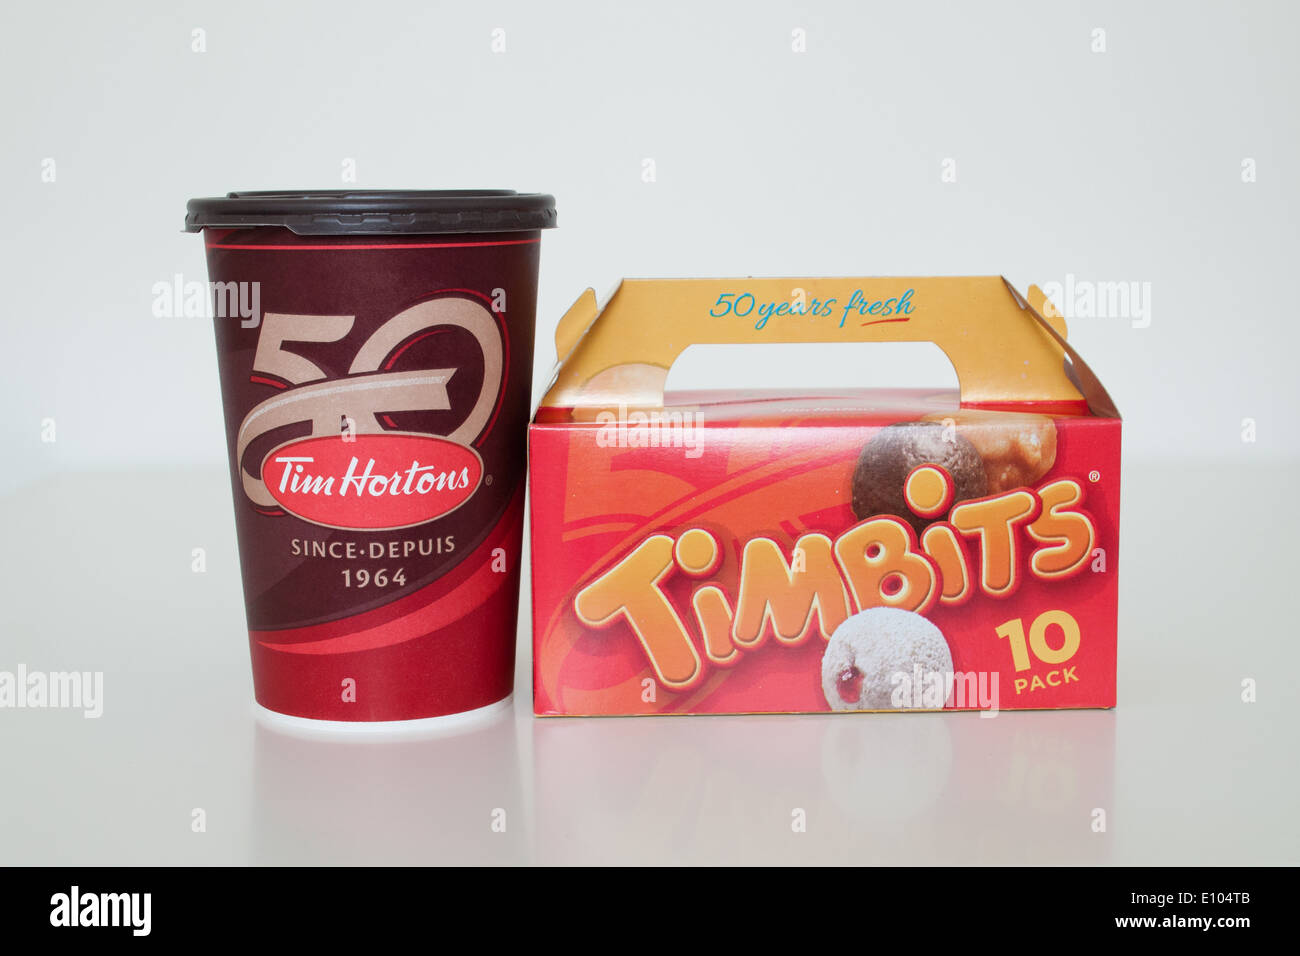 Una taza de café de Tim Hortons y Timbits (agujeros de donut, donut orificios). Canadá. Foto de stock